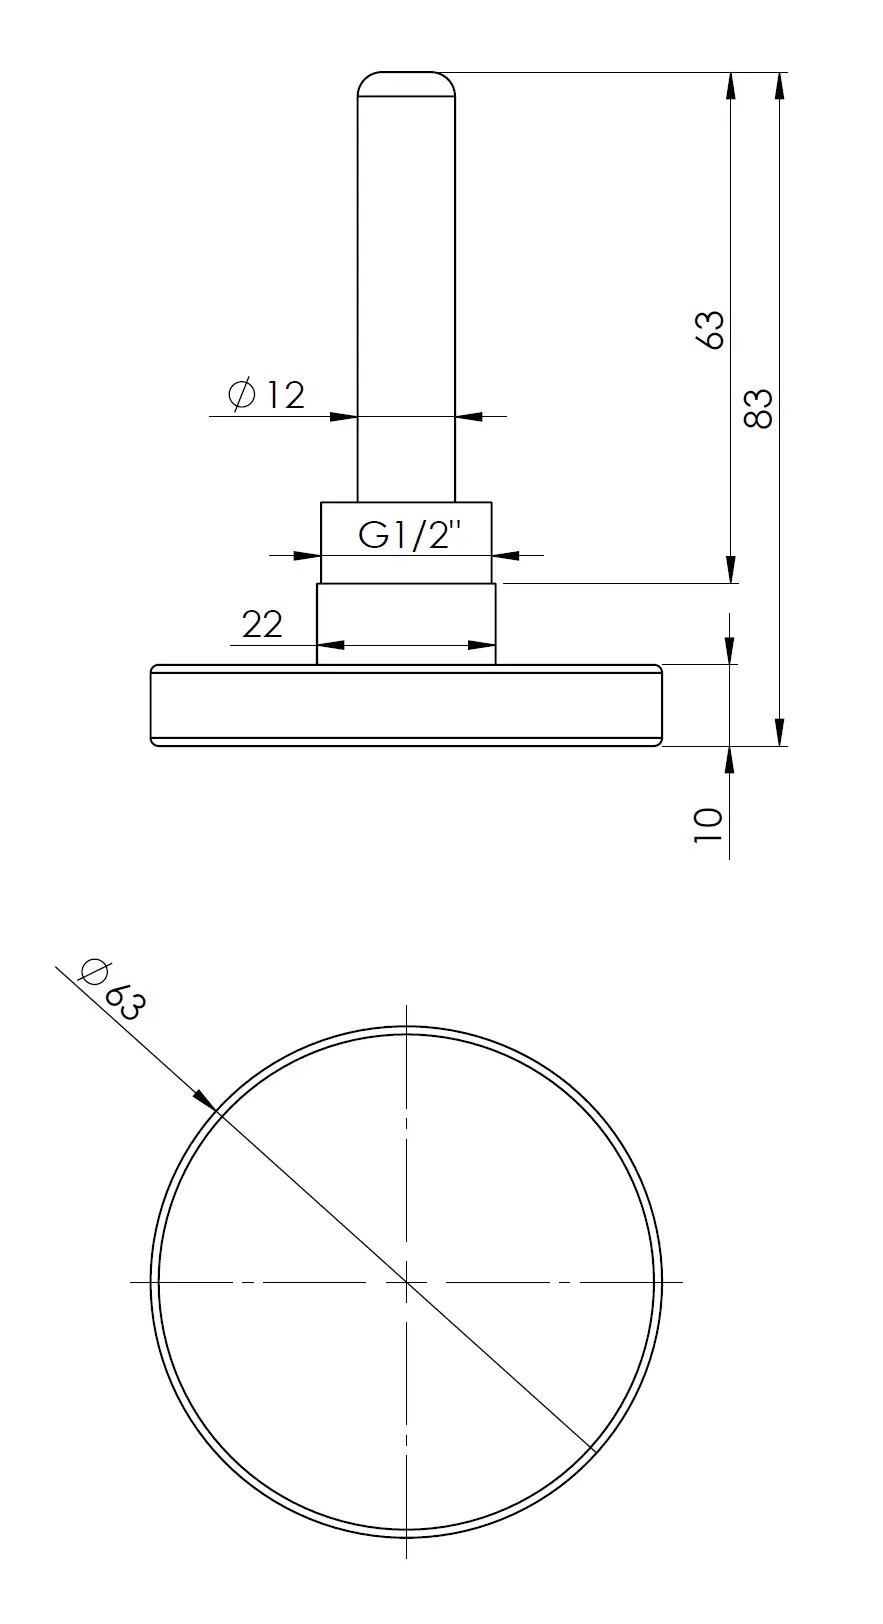 Termometr bimetaliczny BiTh 63, fi63 mm, 0÷60°C, L 63 mm, G1/2", ax, kl. 2 - budowa